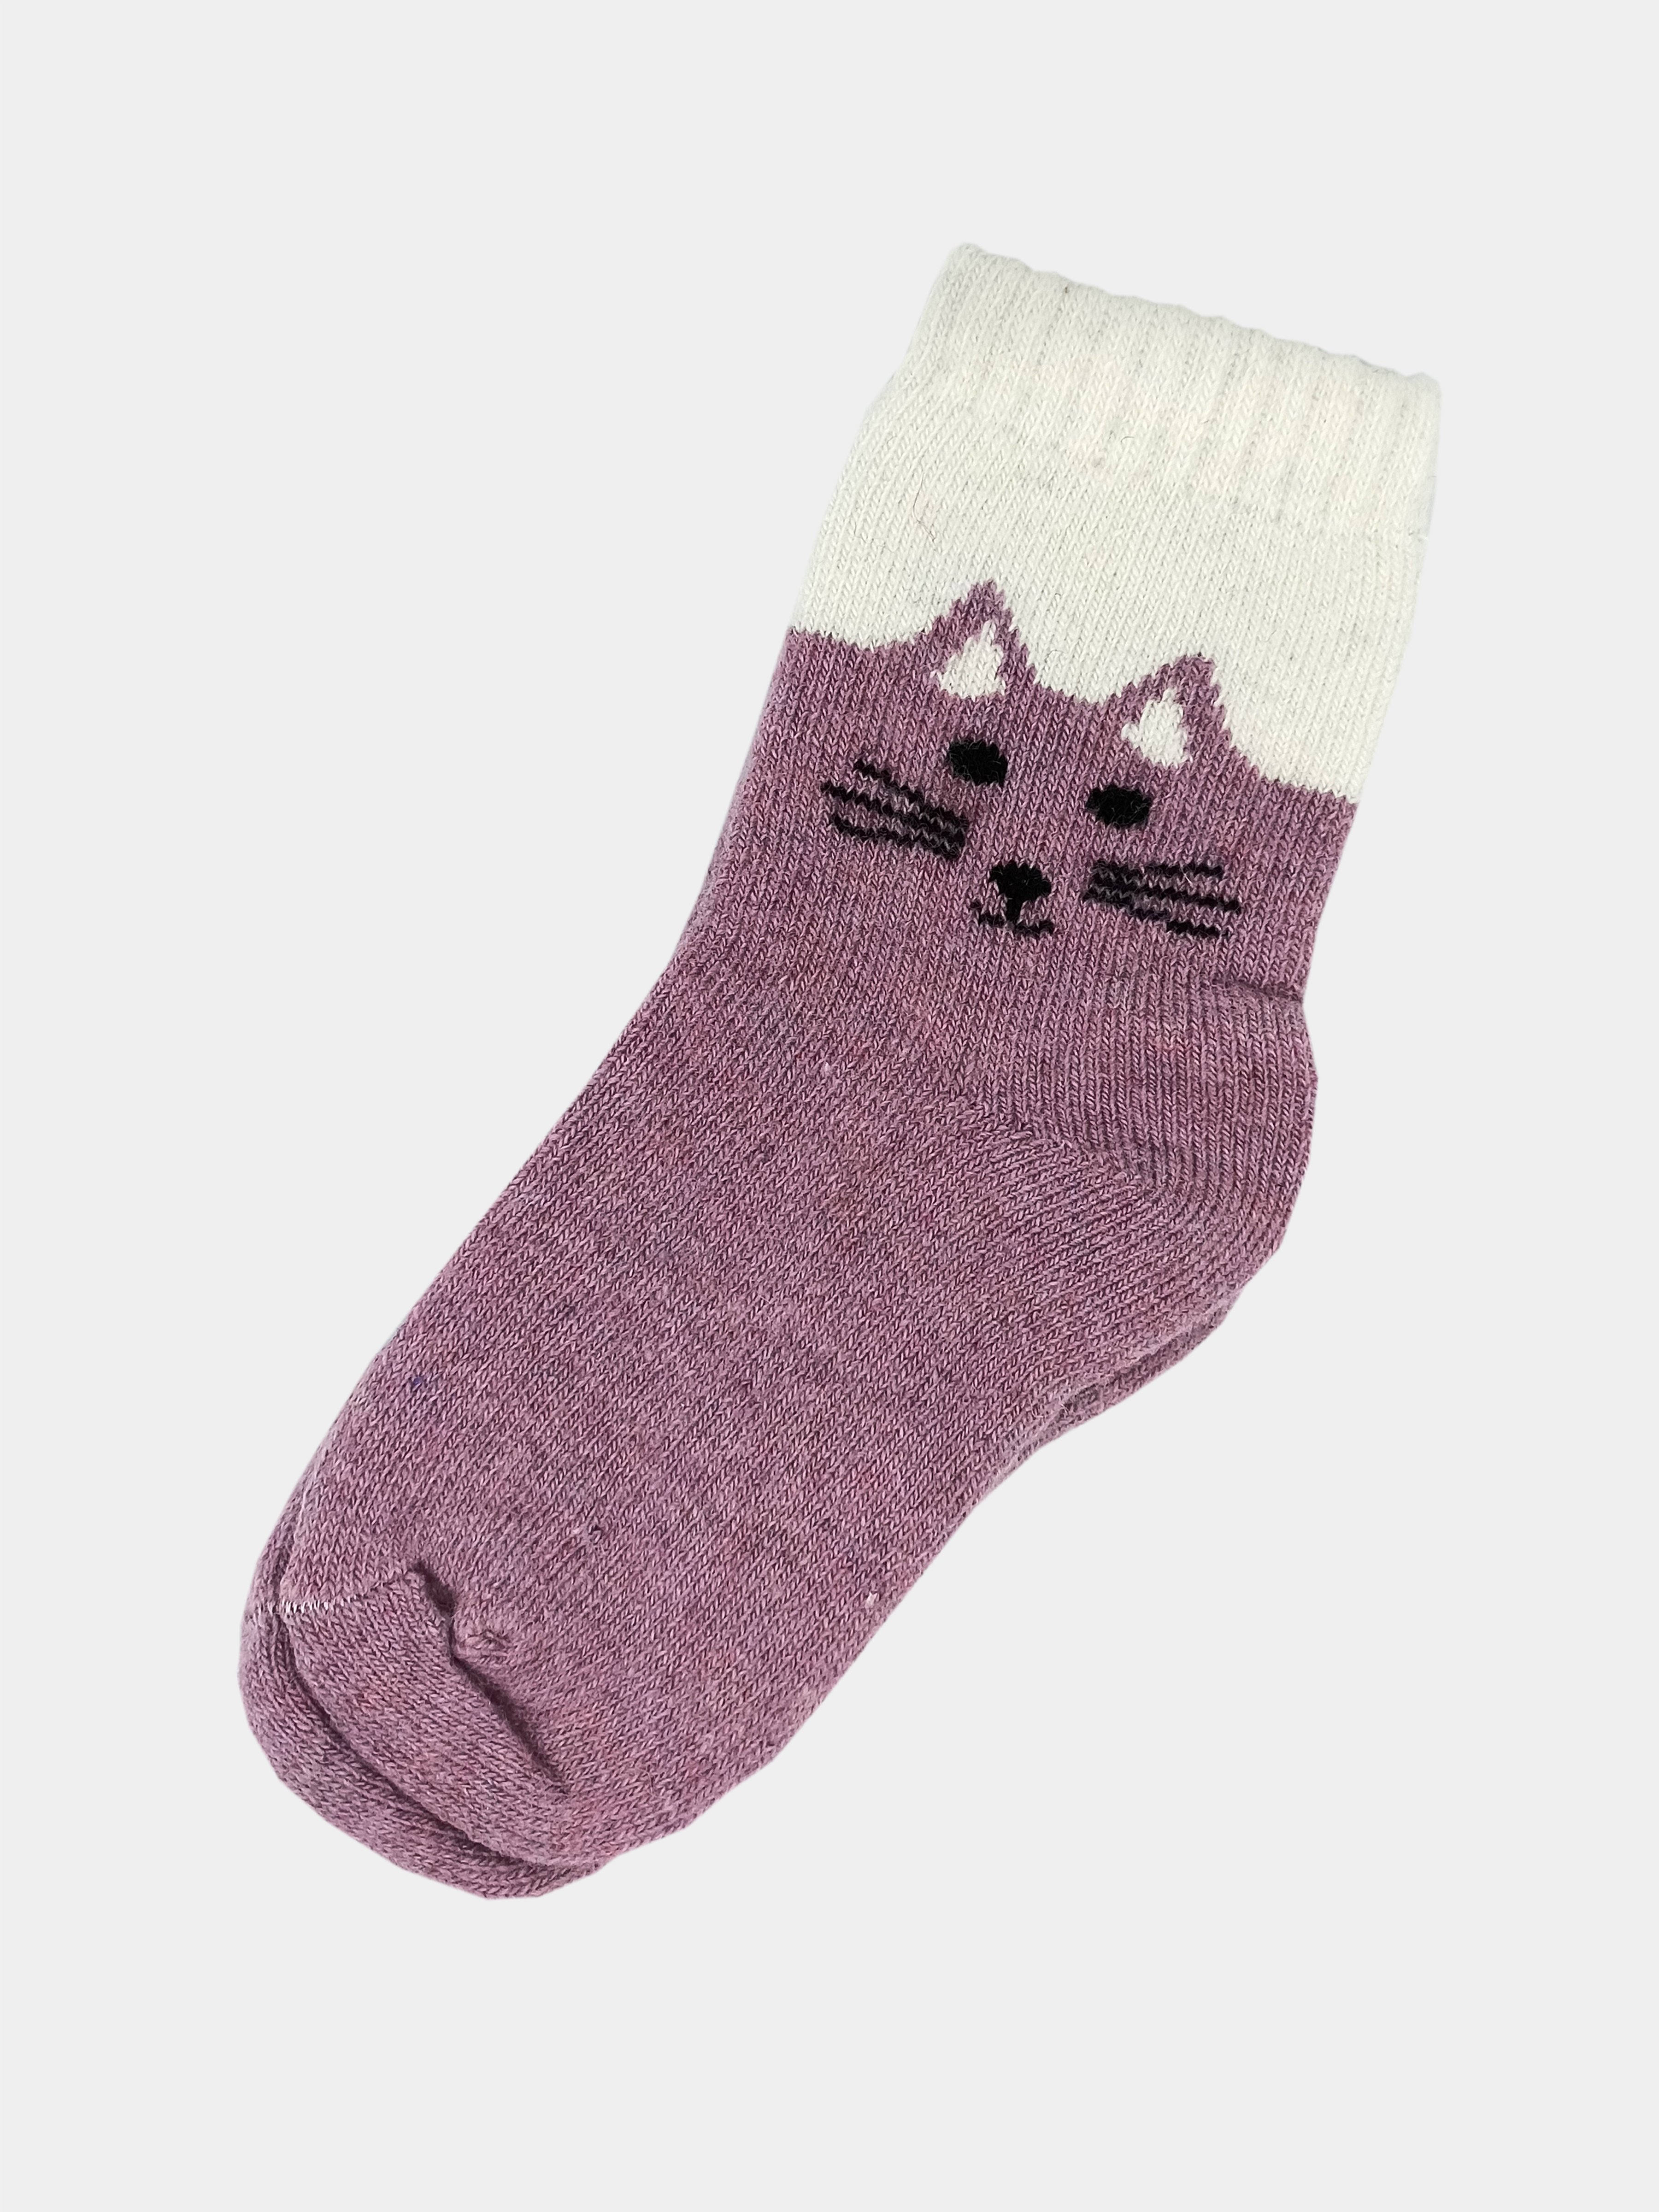 Кот из носков (своими руками)